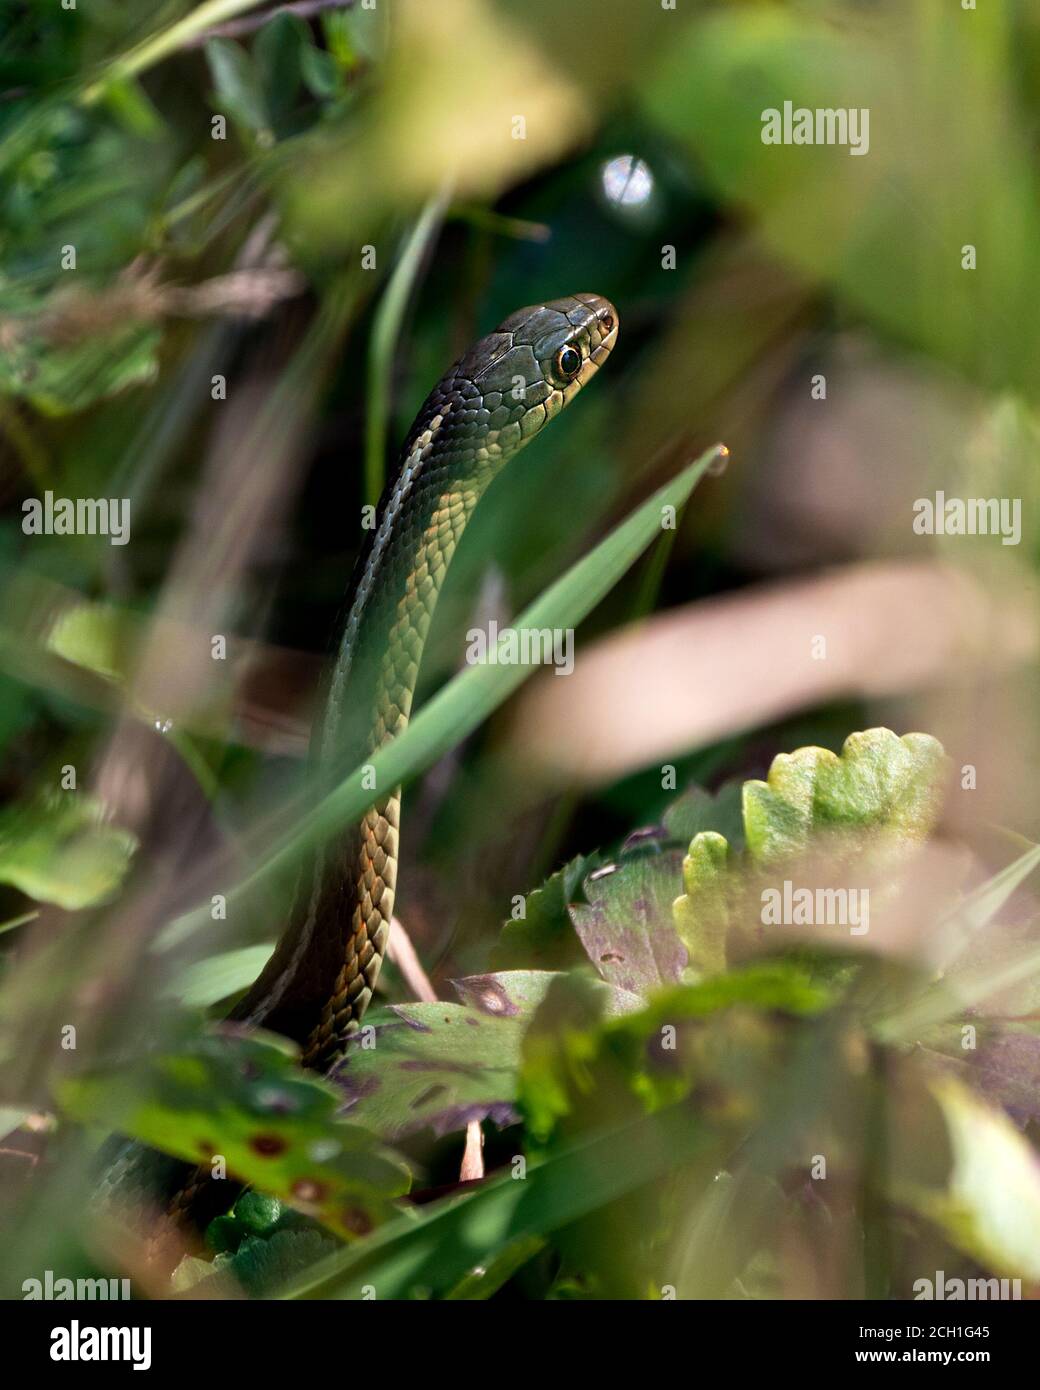 Vue rapprochée de la tête de serpent avec avant-plan et arrière-plan du feuillage dans son environnement et son habitat au soleil. Banque D'Images